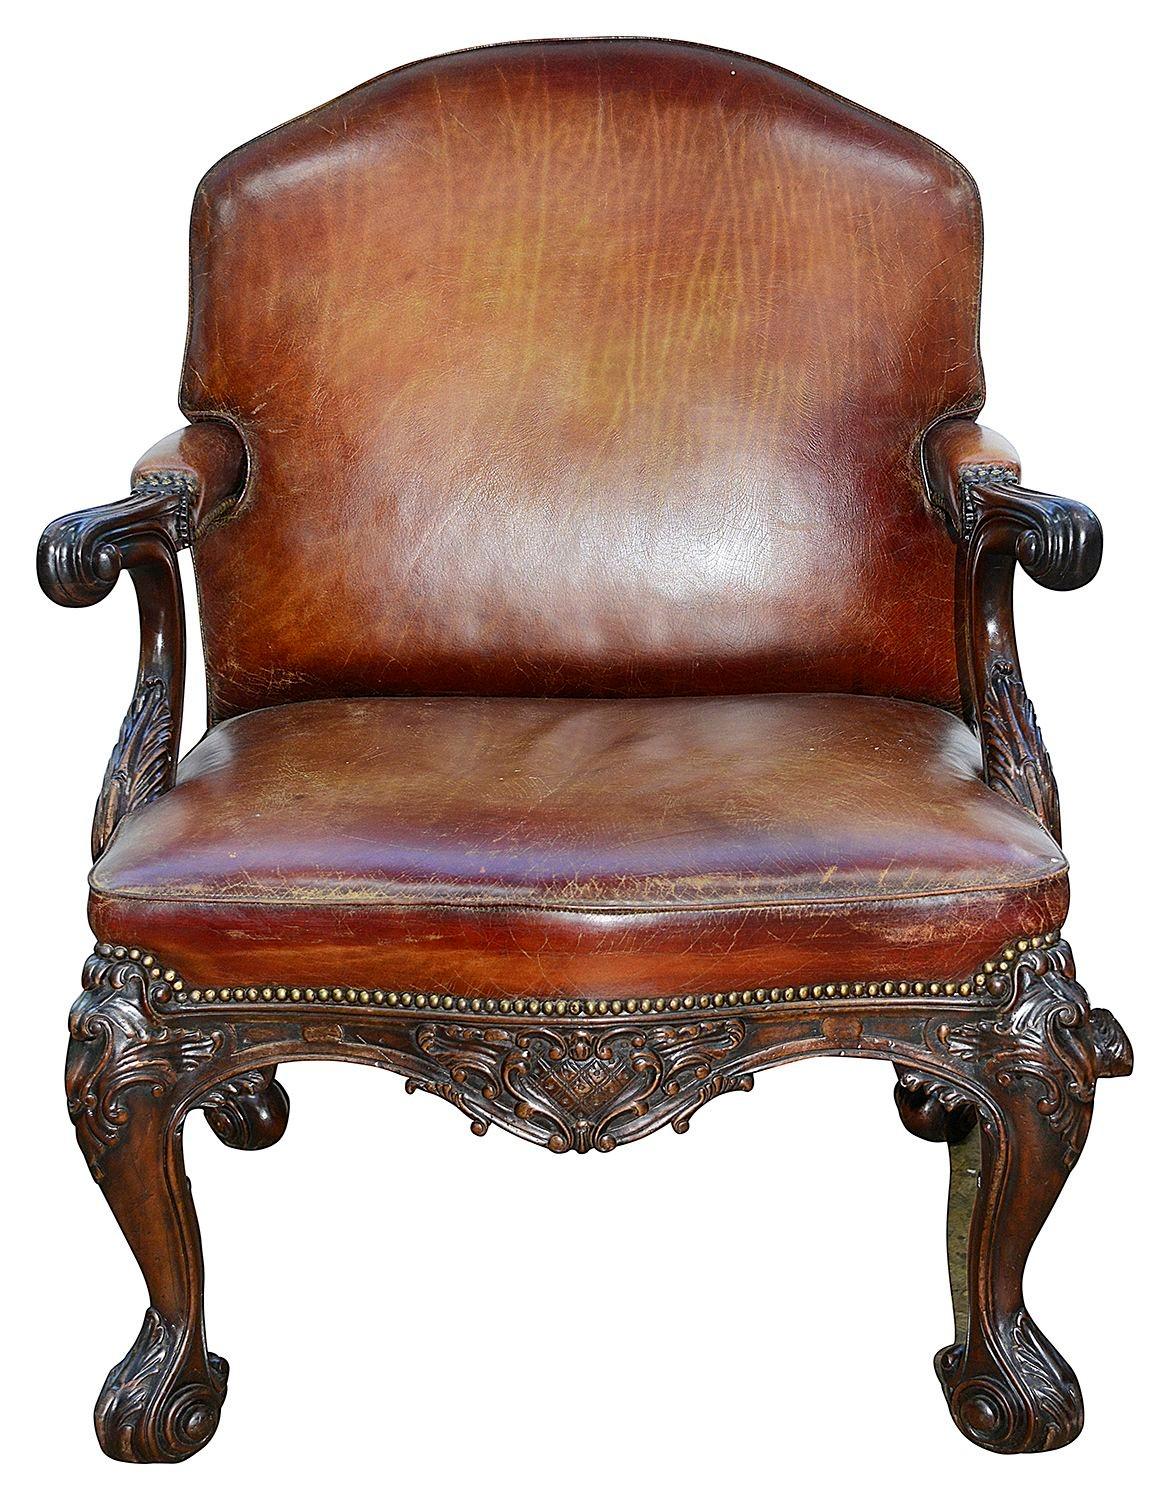 Très beau fauteuil en cuir d'acajou de style 18e siècle, dont le cuir est d'une magnifique couleur fauve décolorée, avec des clous en laiton. Décor classique de volutes et de feuillages sculpté à la main sur le bois apparent, reposant sur quatre